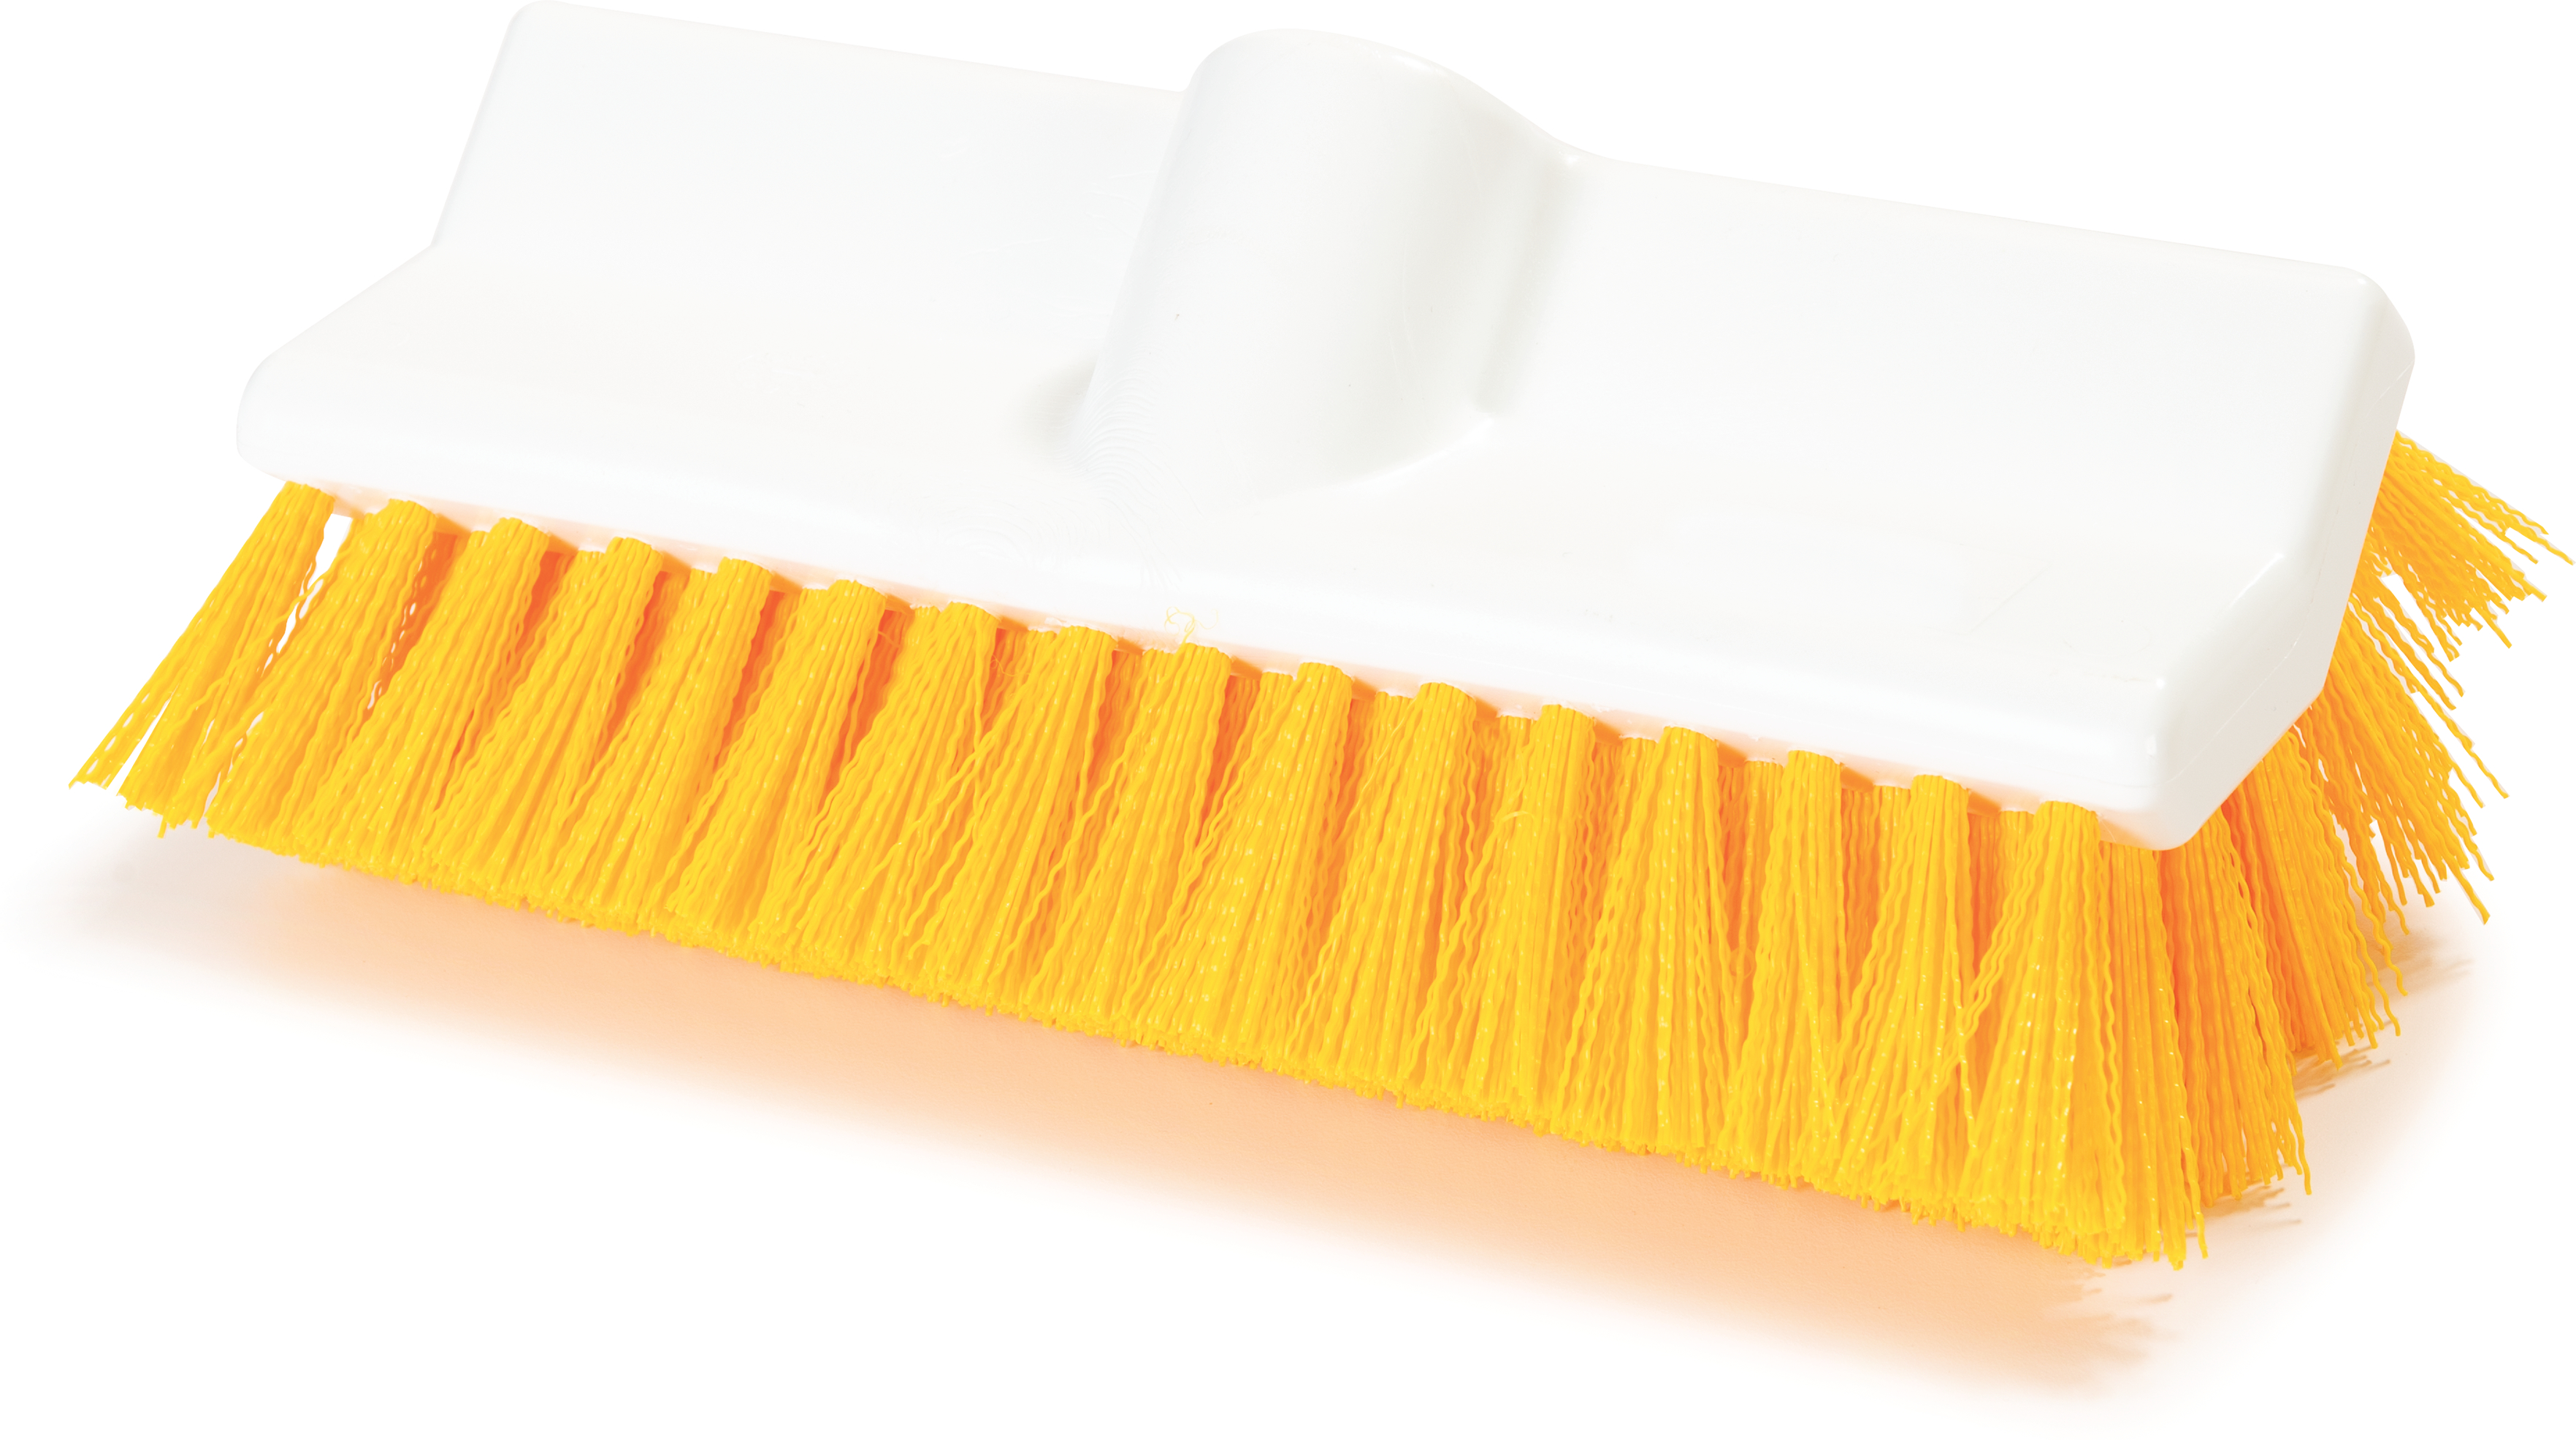 Dust Up Floor Dressing and Dust Mop Treatment, Lemon Scent, 14 oz Aerosol  Spray, Dozen - Reliable Paper